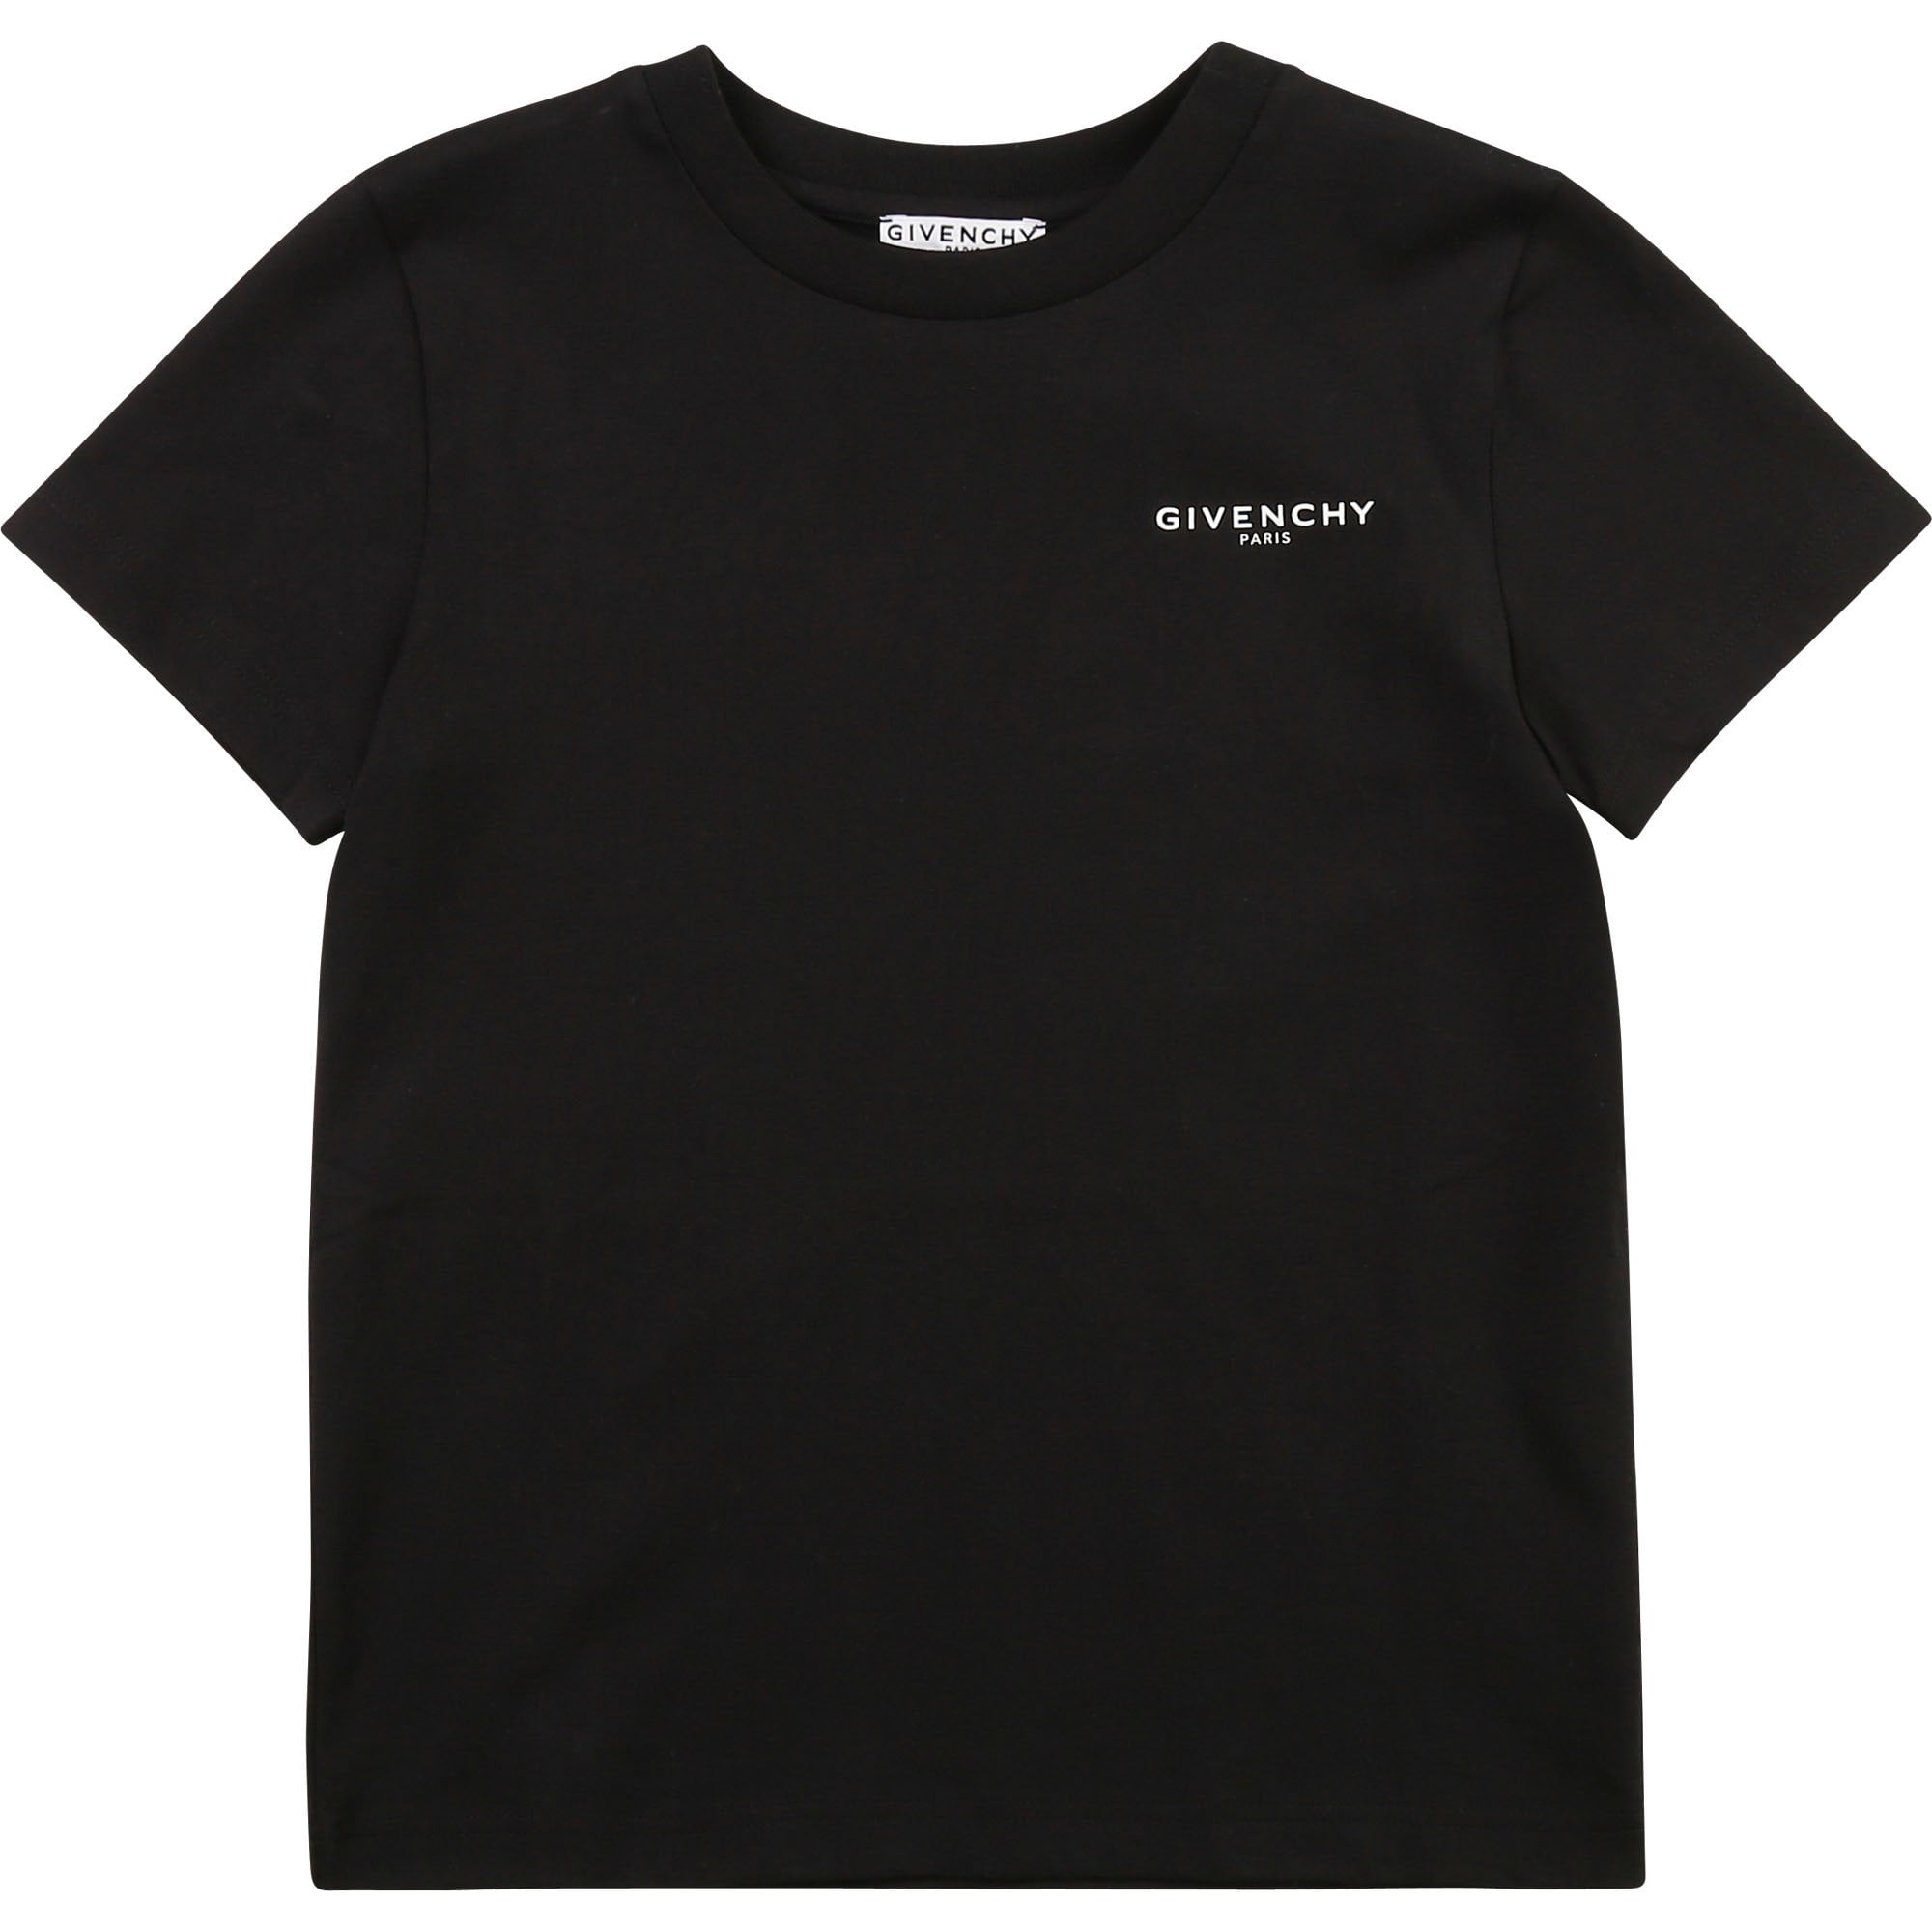 Givenchy Boys Cotton T-shirt Black